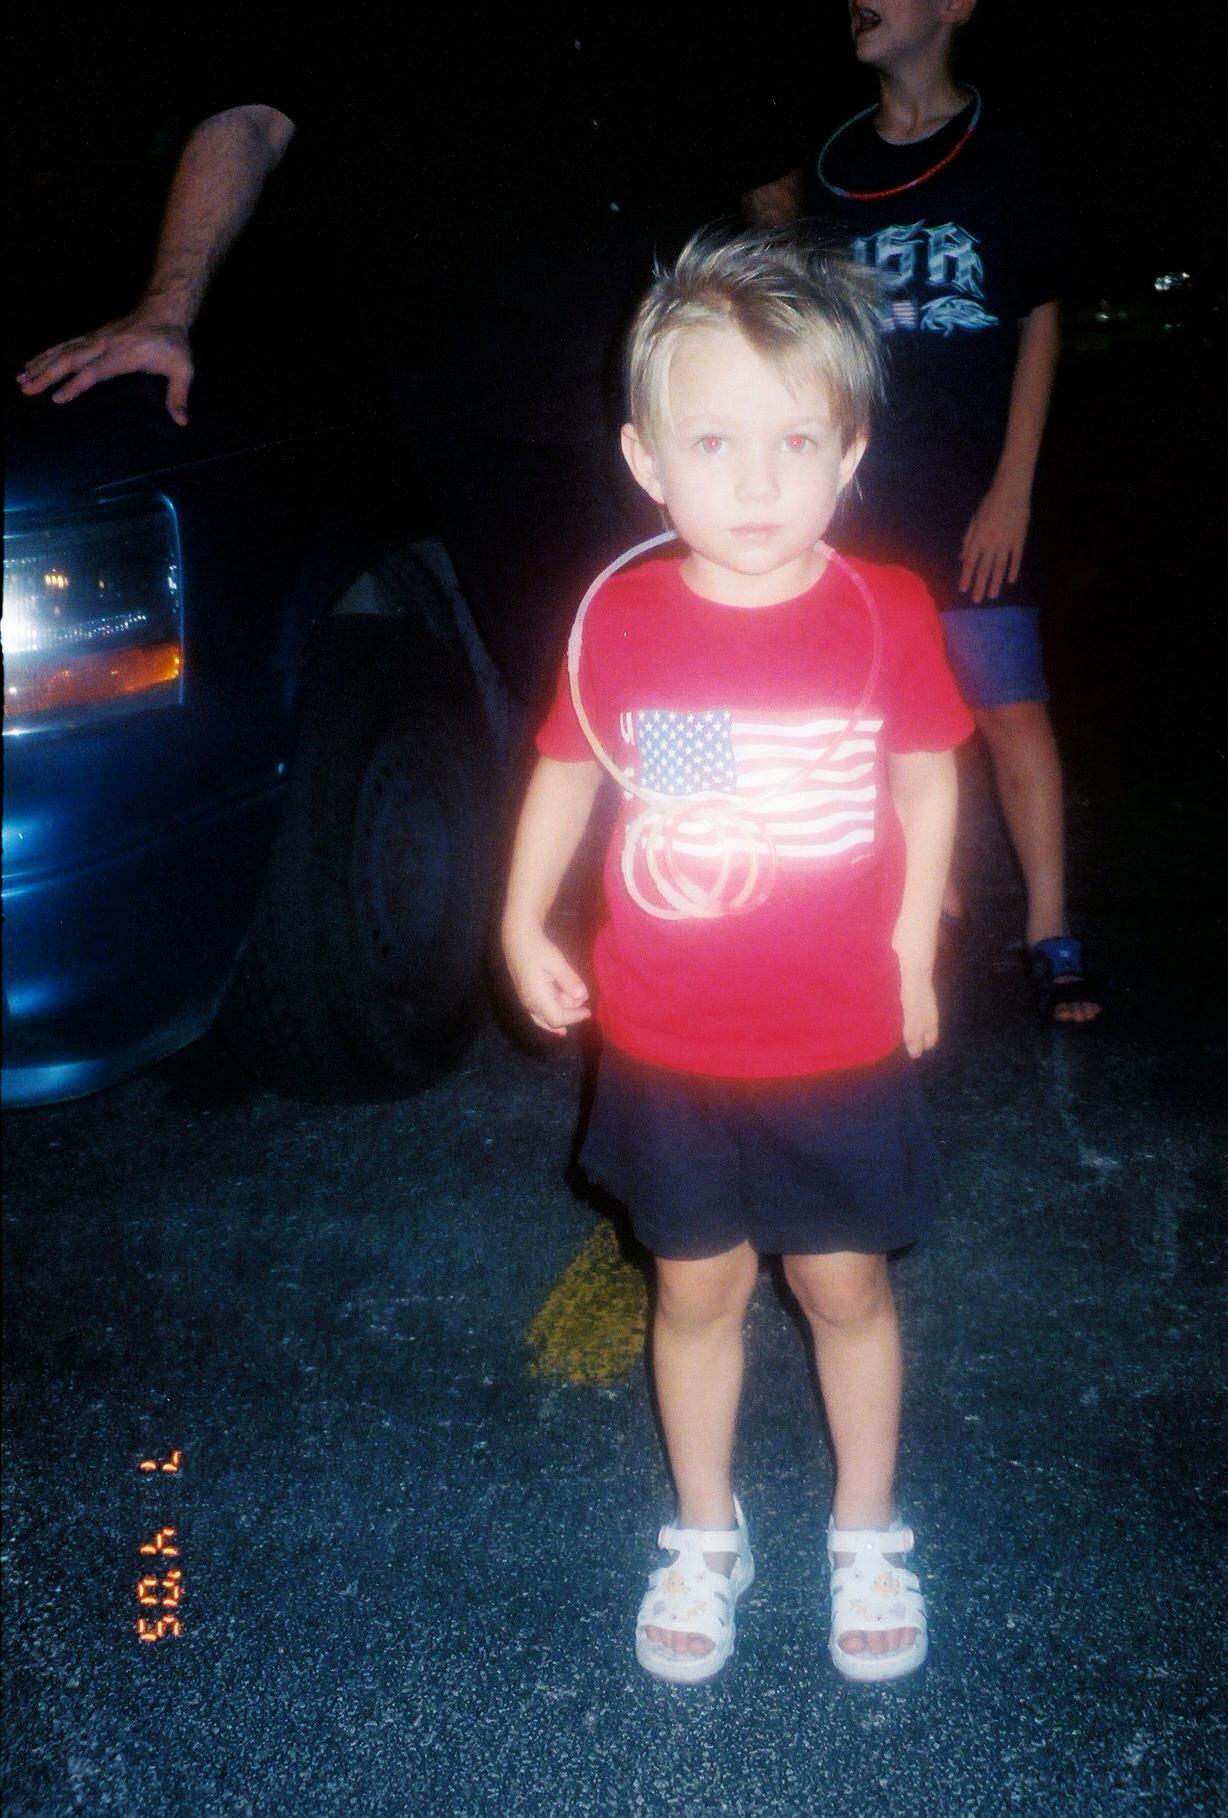 a little boy wearing an american flag t - shirt